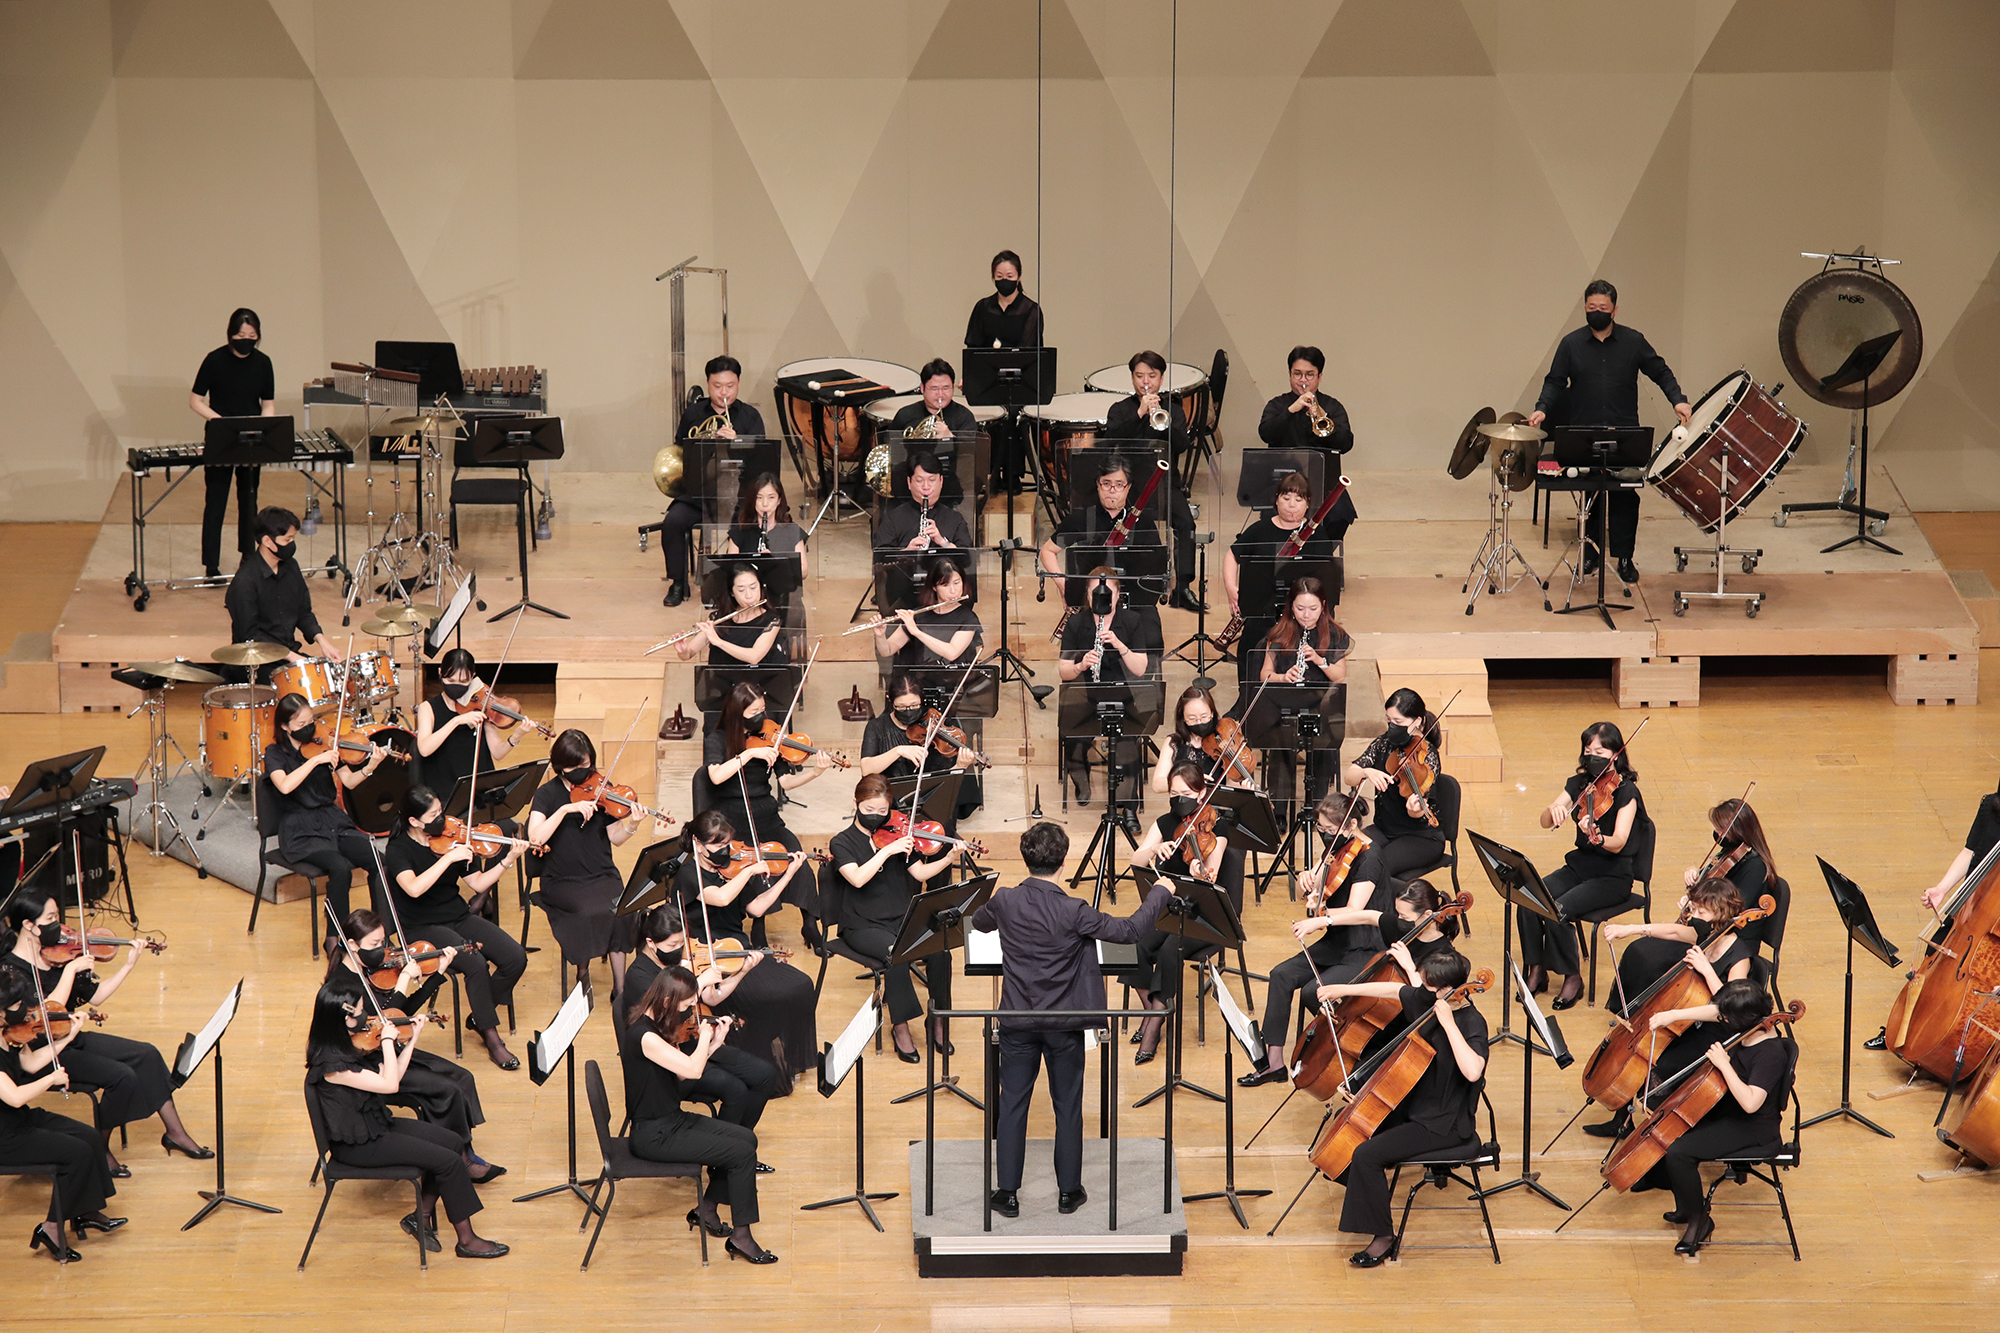 [7.23]부천필하모닉오케스트라 BIFAN 개최기념 영화음악 콘서트